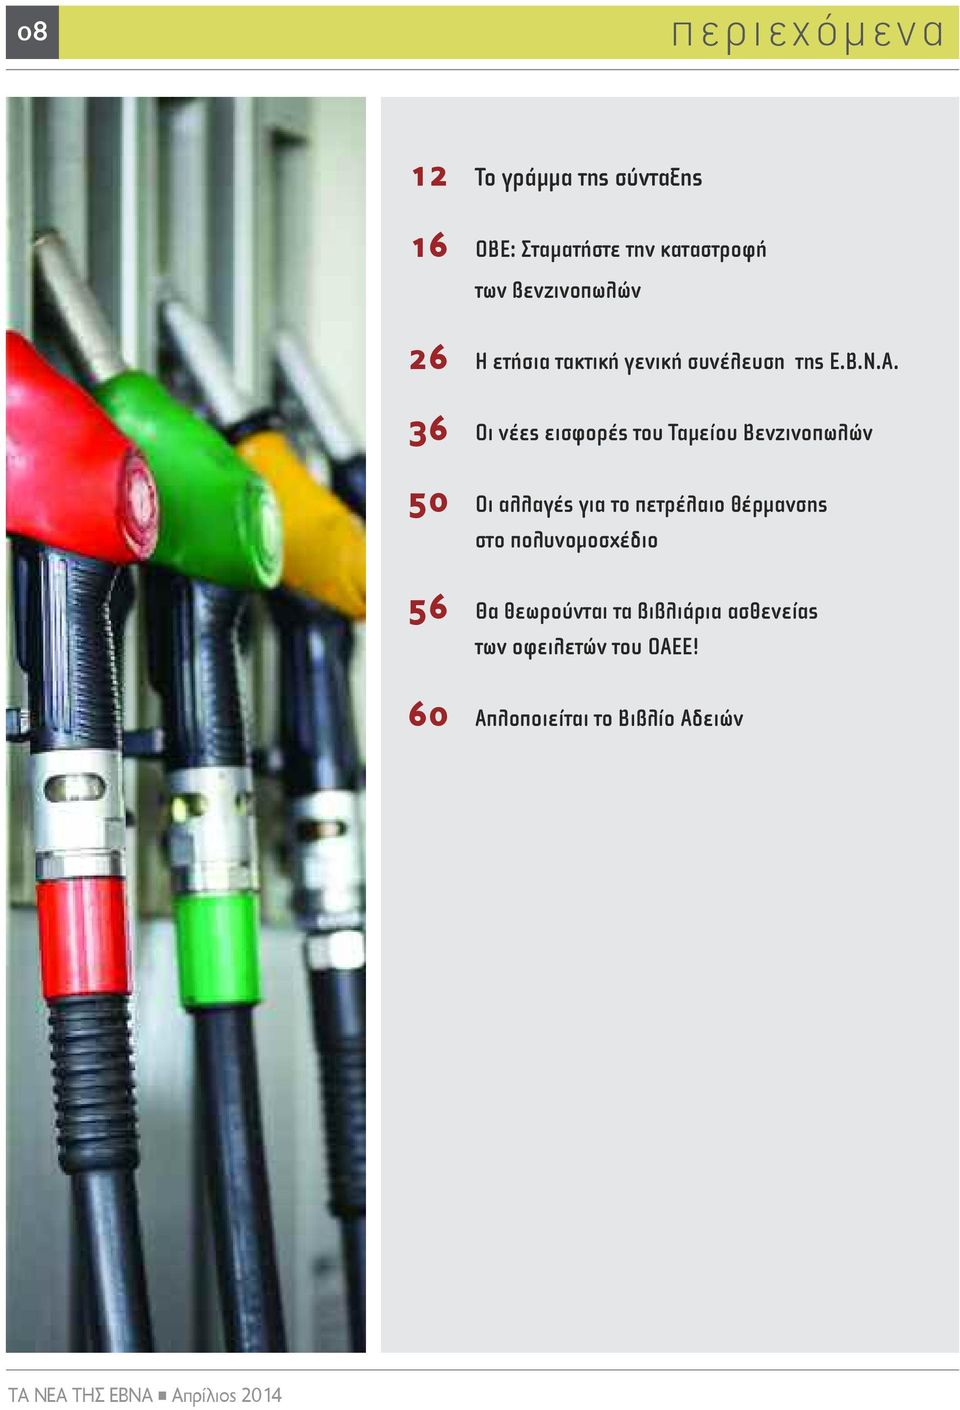 36 Οι νέες εισφορές του Ταμείου Βενζινοπωλών 50 Οι αλλαγές για το πετρέλαιο θέρμανσης στο